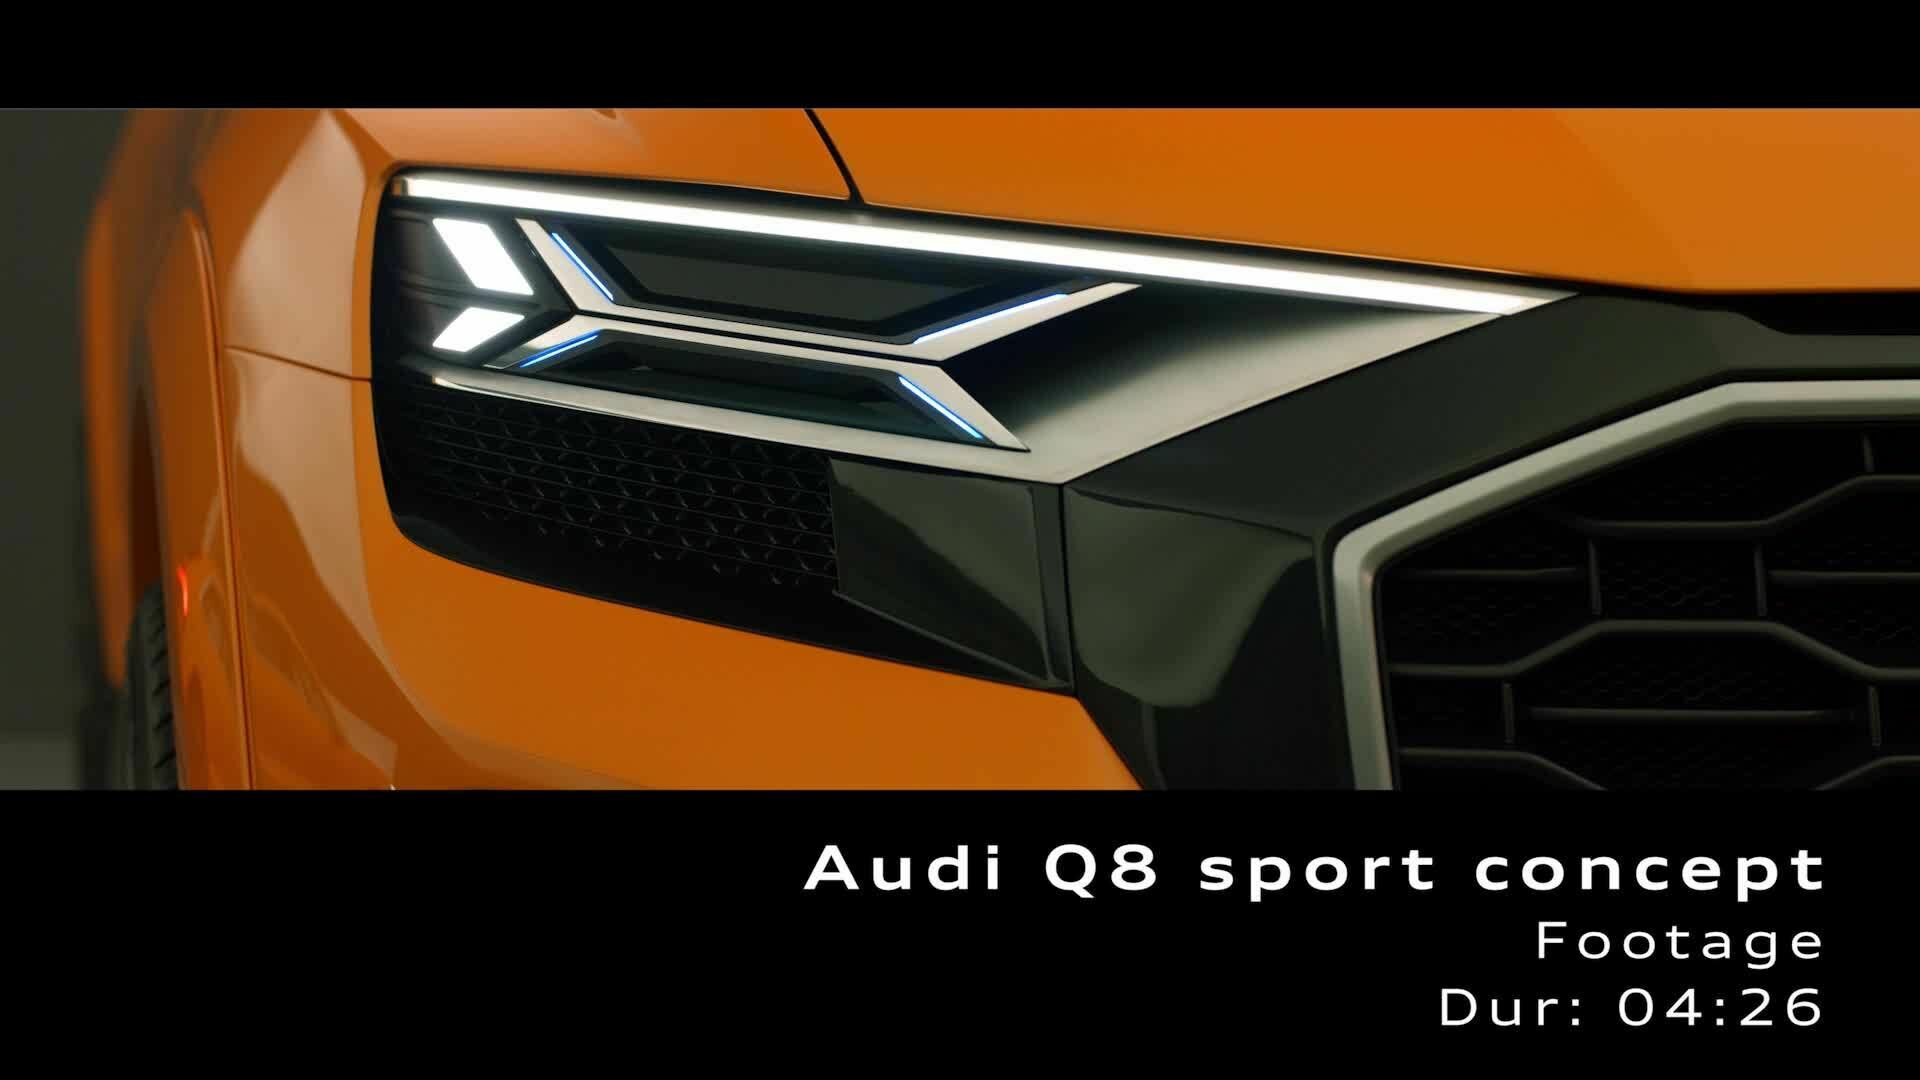 Audi Q8 sport concept - Footage